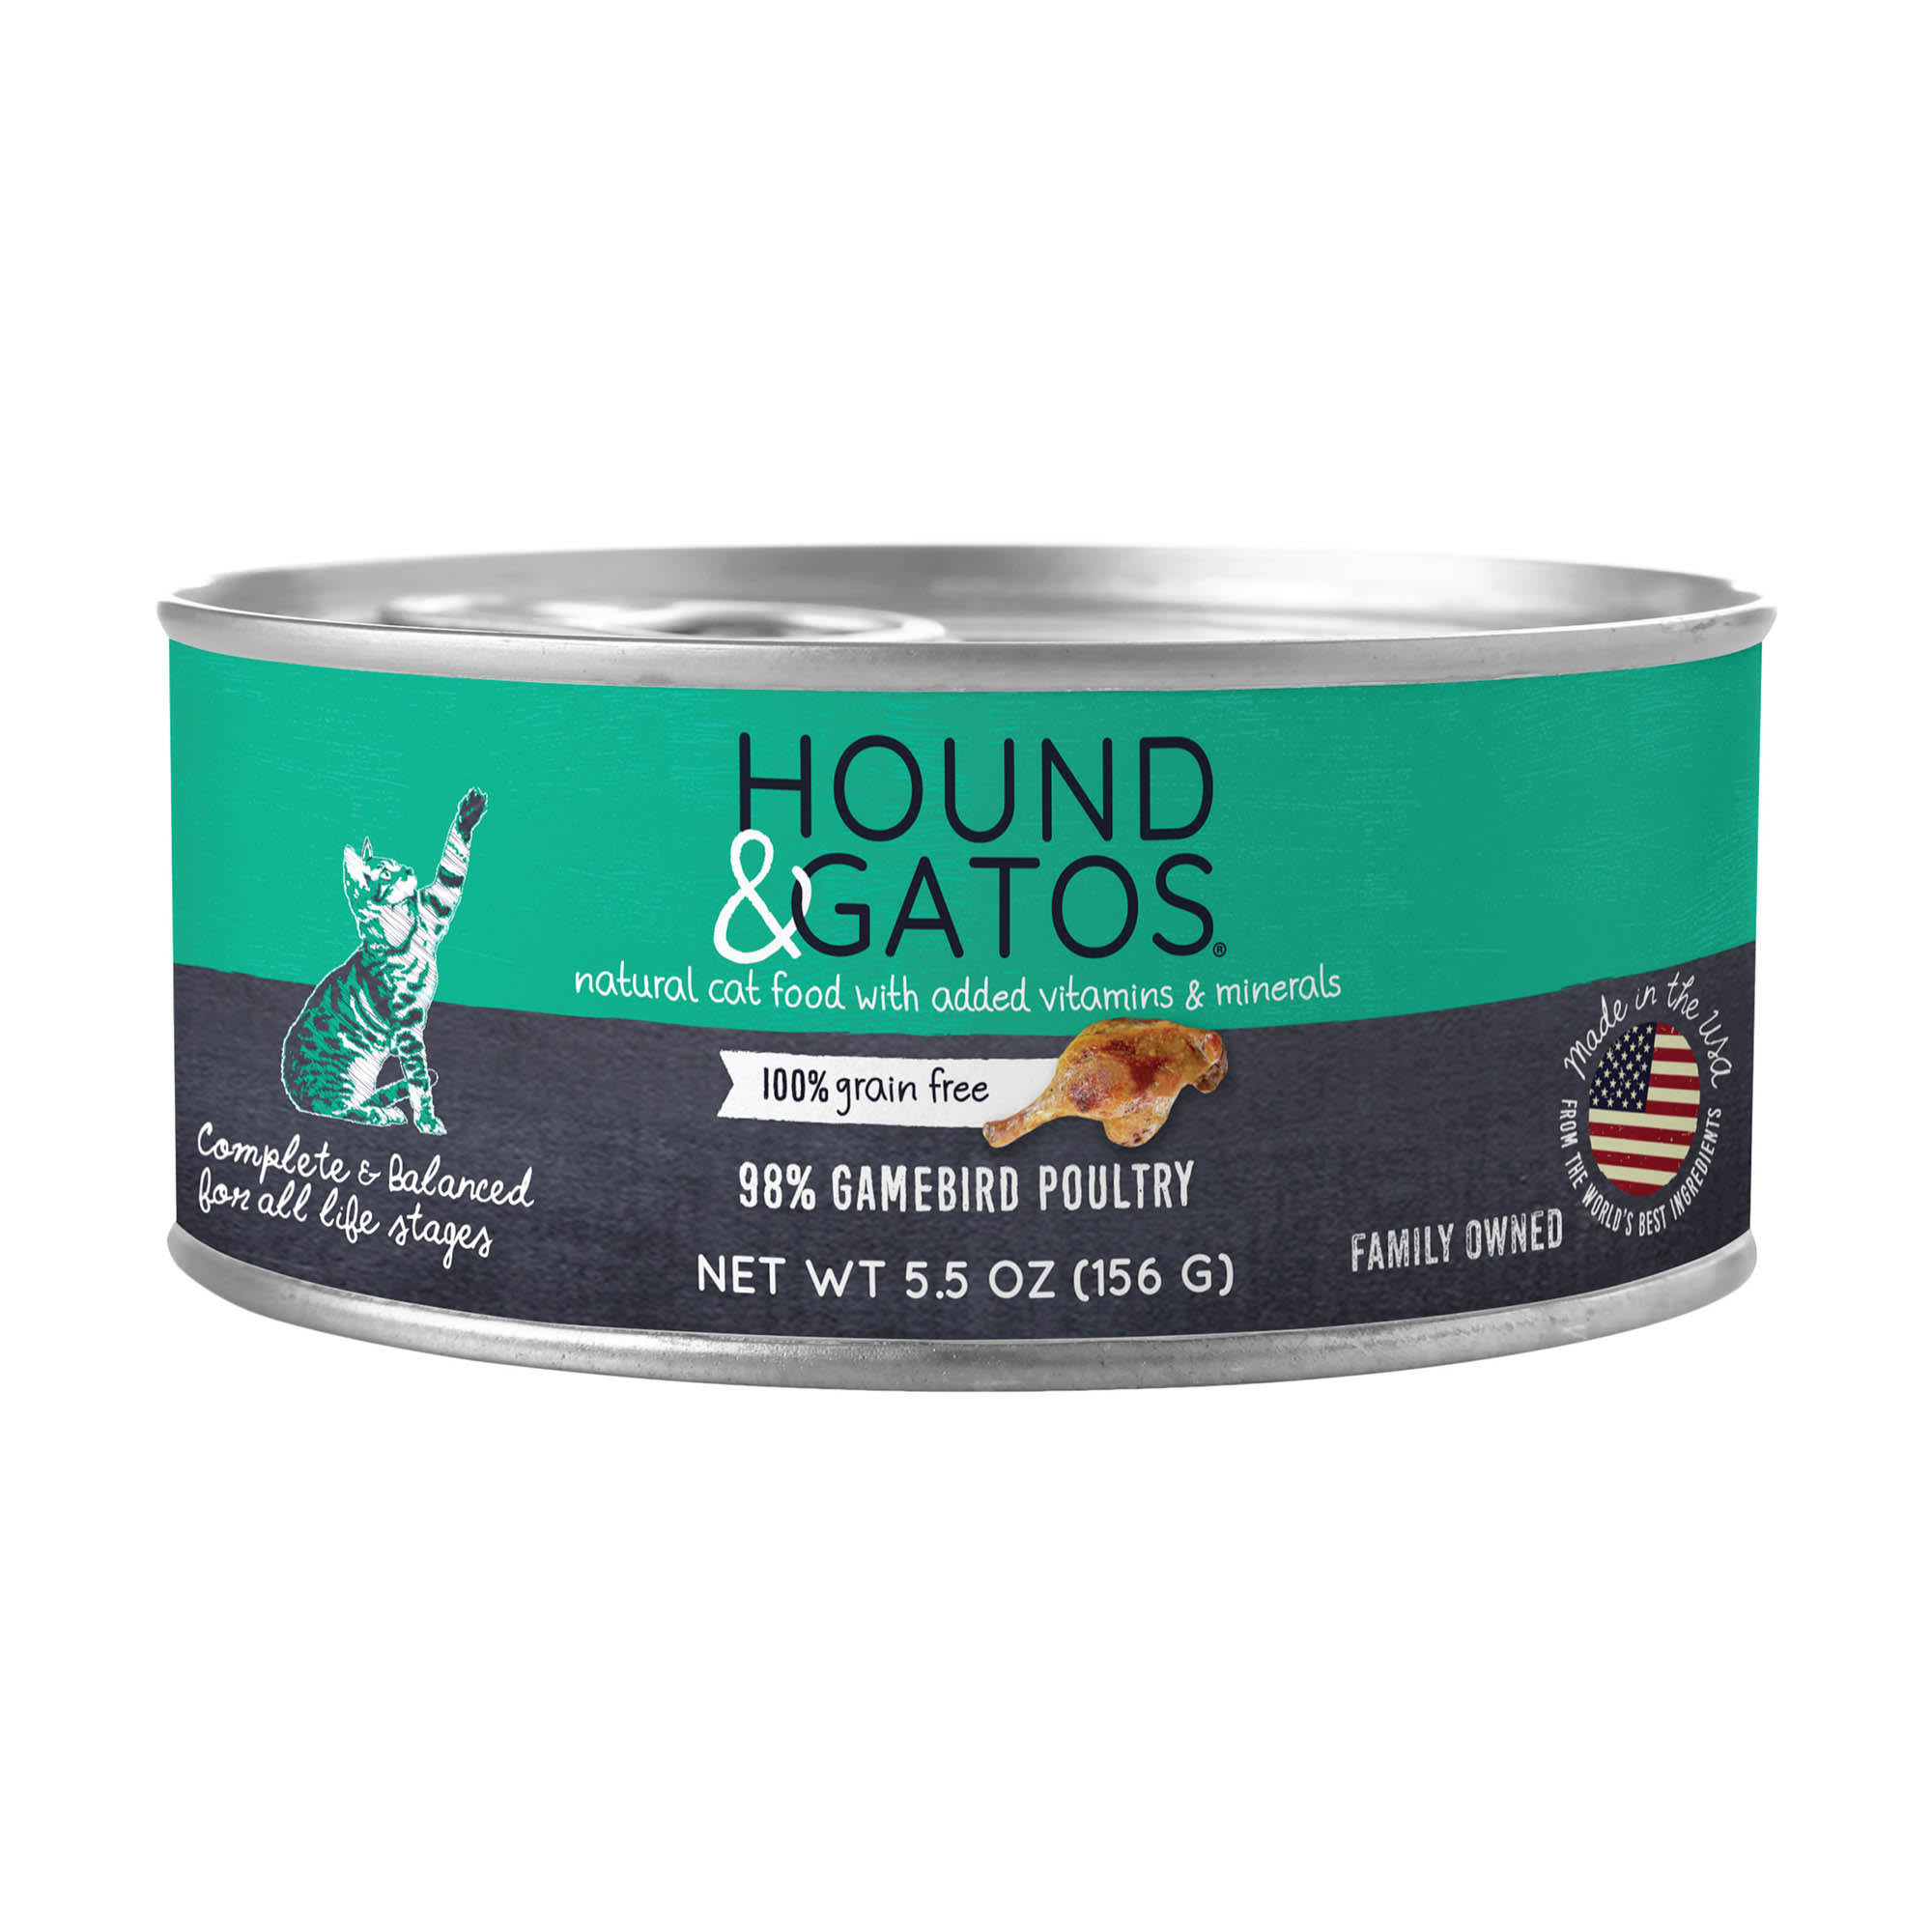 Hound & Gatos Grain Free, Gamebird Poultry Wet Cat Food